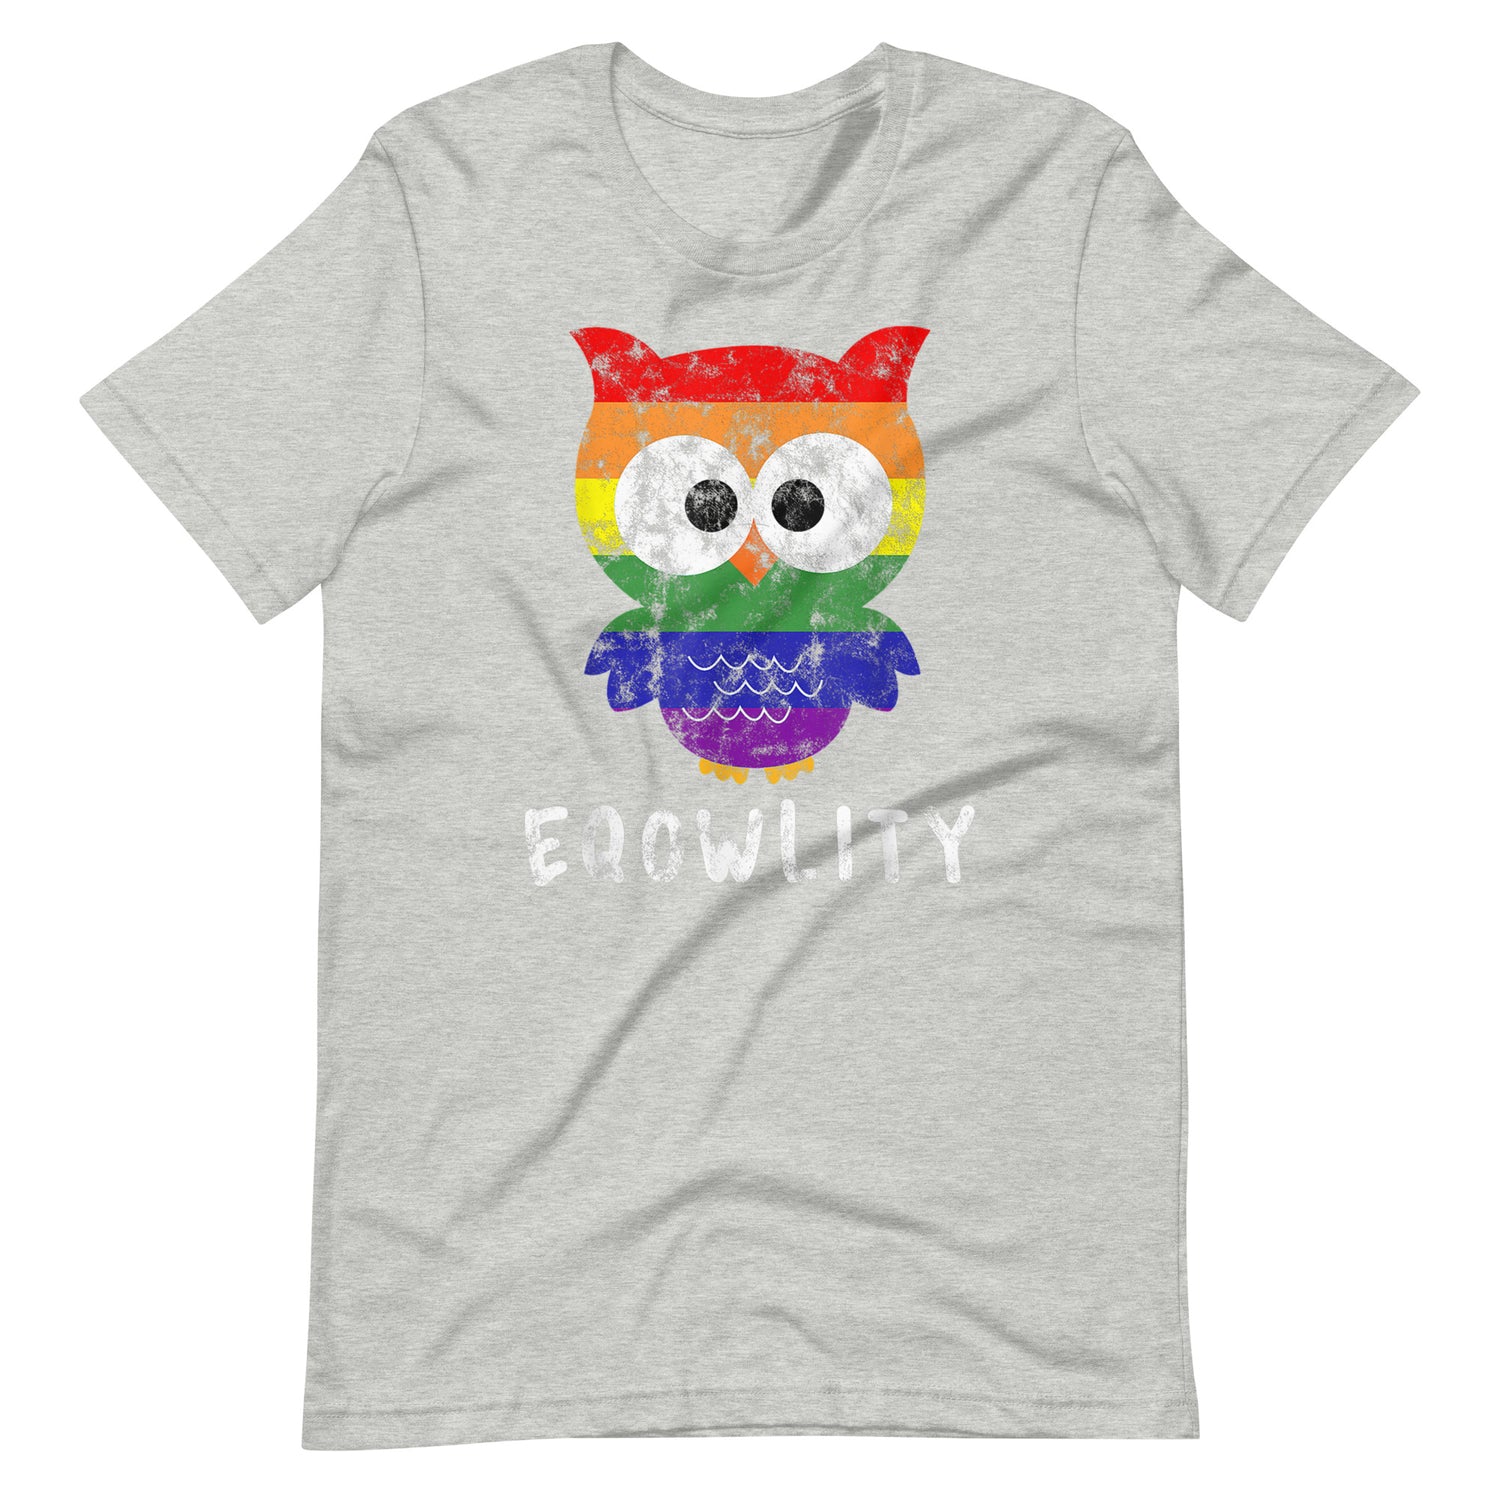 Eqowlity T-Shirt - gay pride apparel